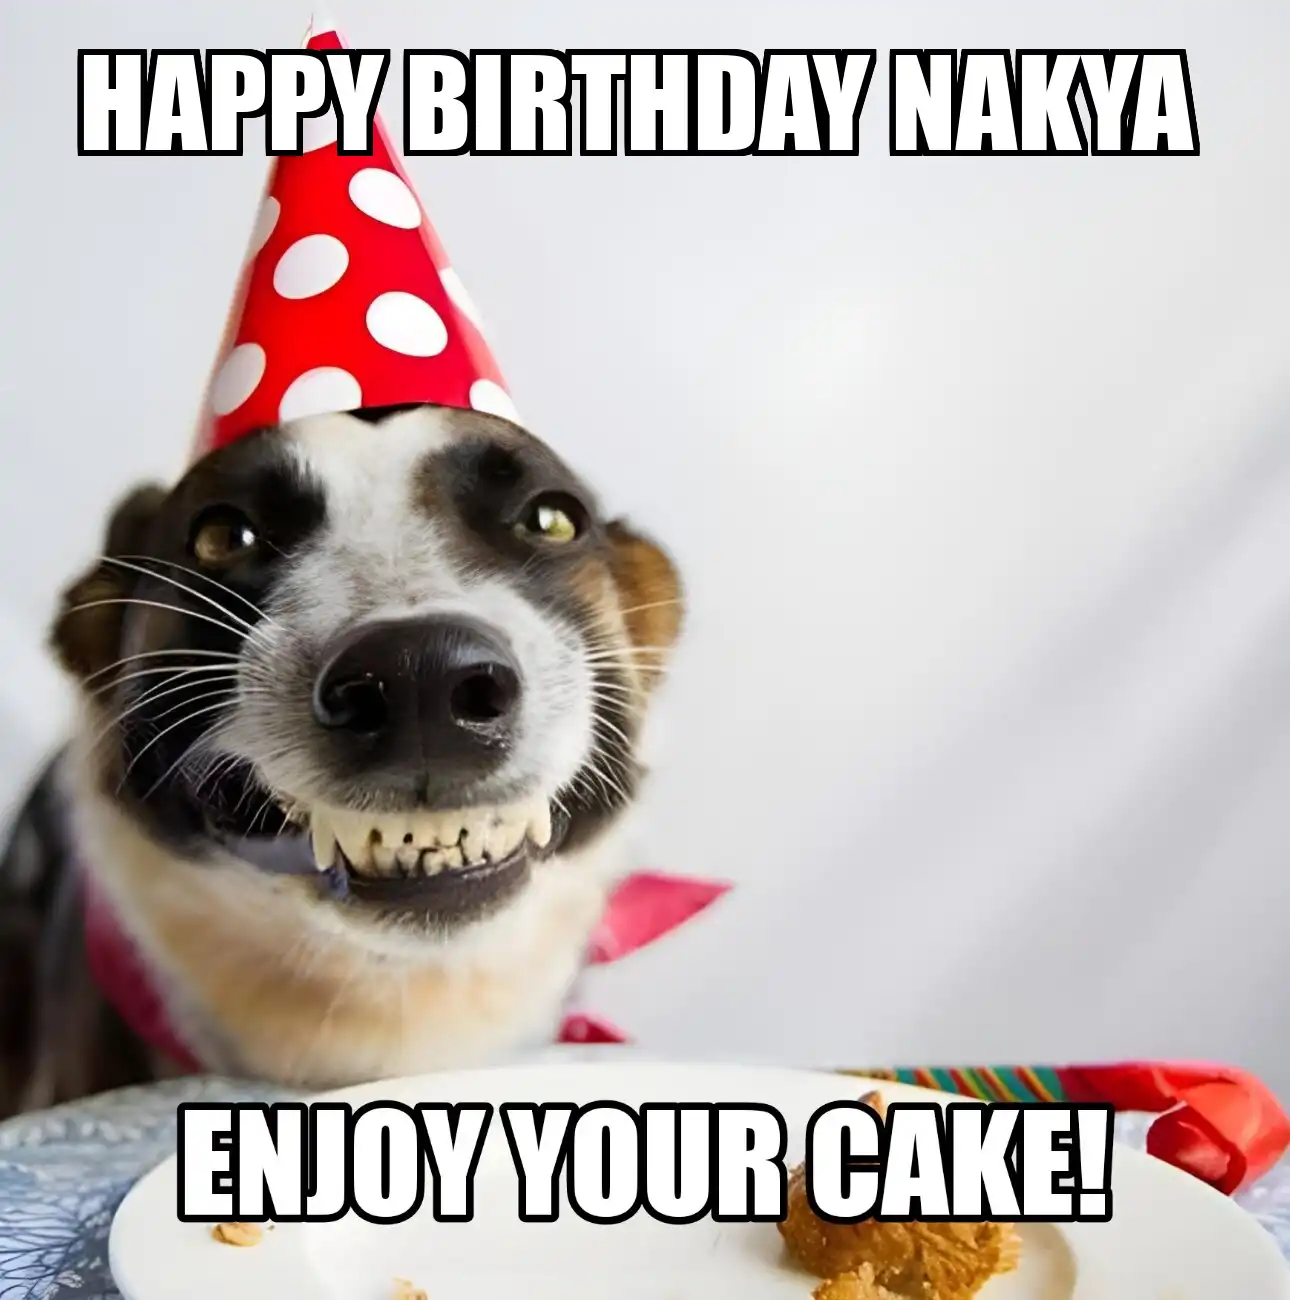 Happy Birthday Nakya Enjoy Your Cake Dog Meme